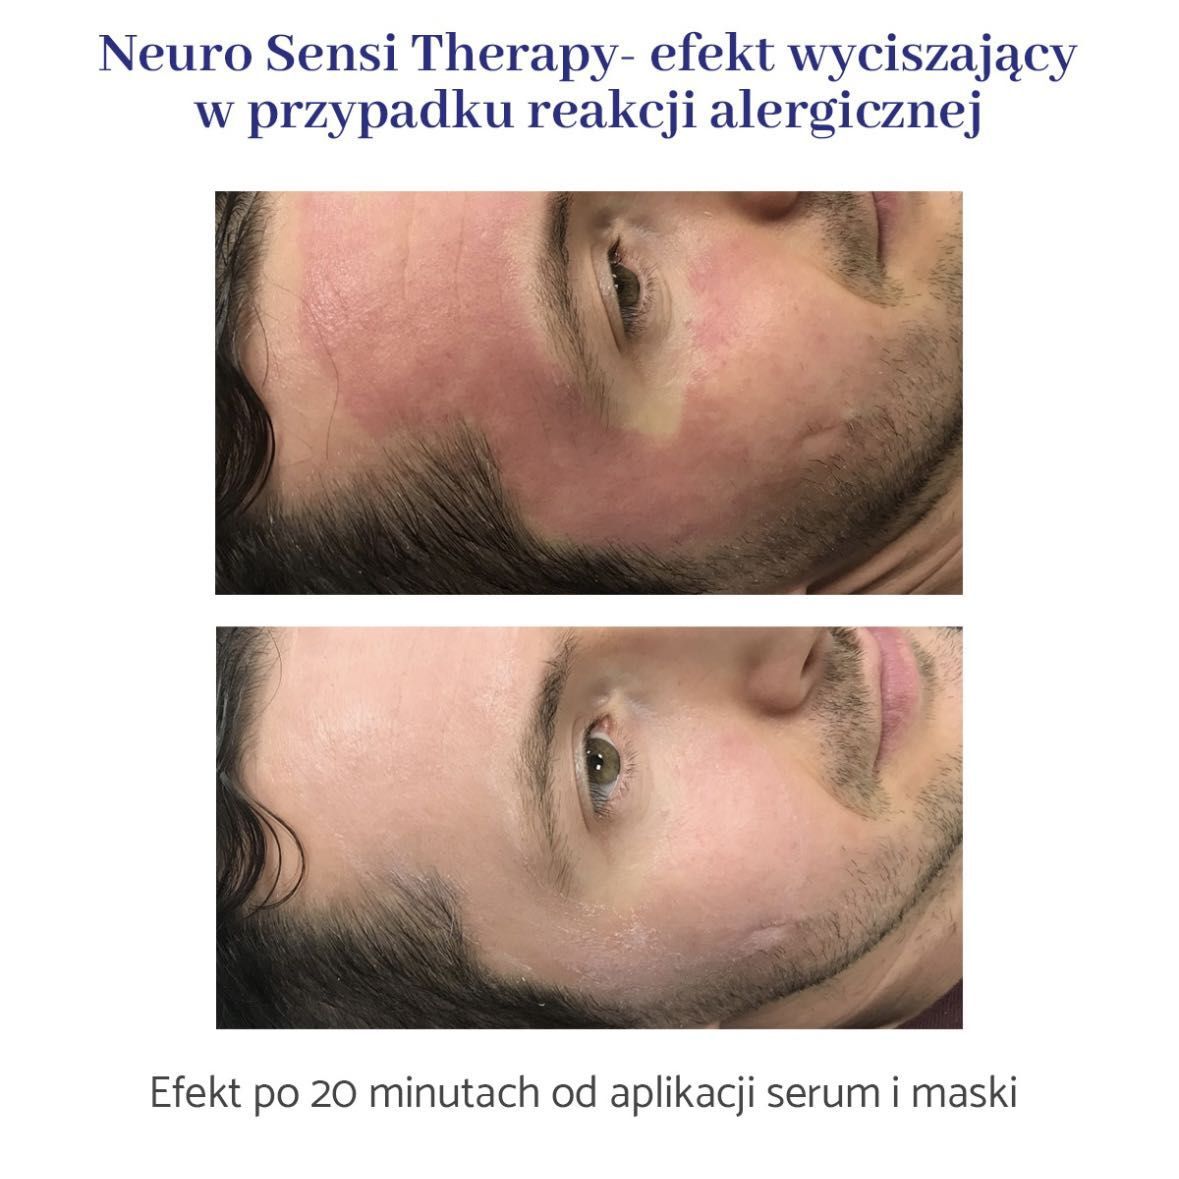 Portfolio usługi Neuro Sensi Therapy